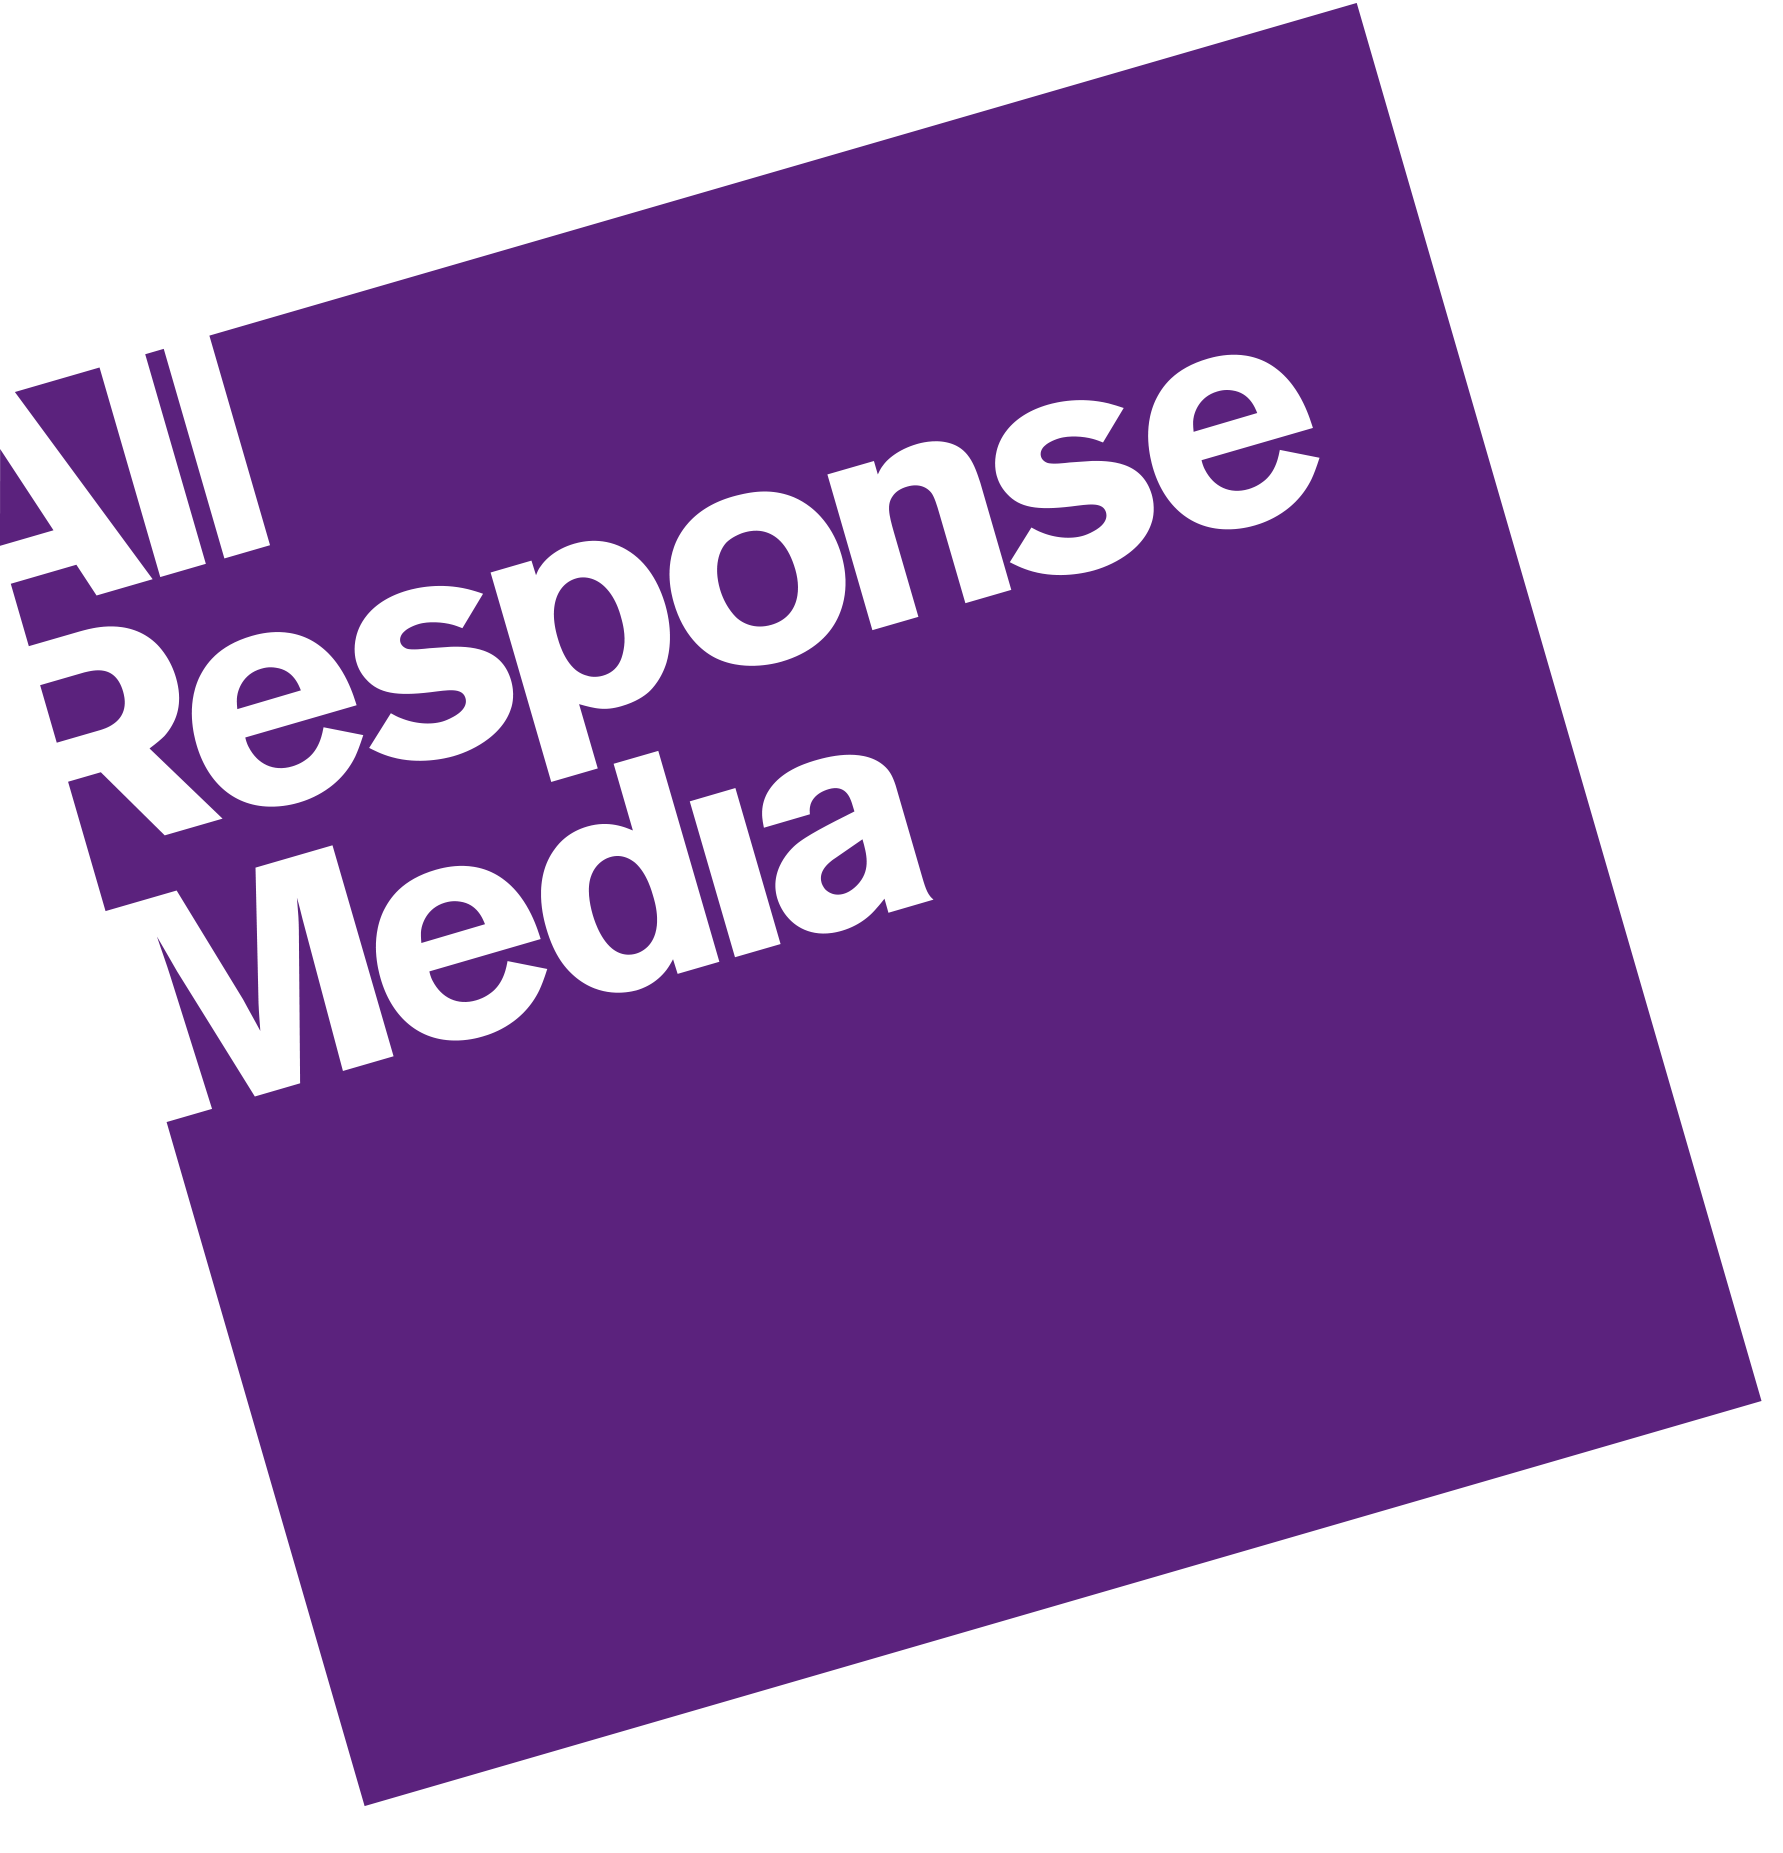 All Response Media Ltd